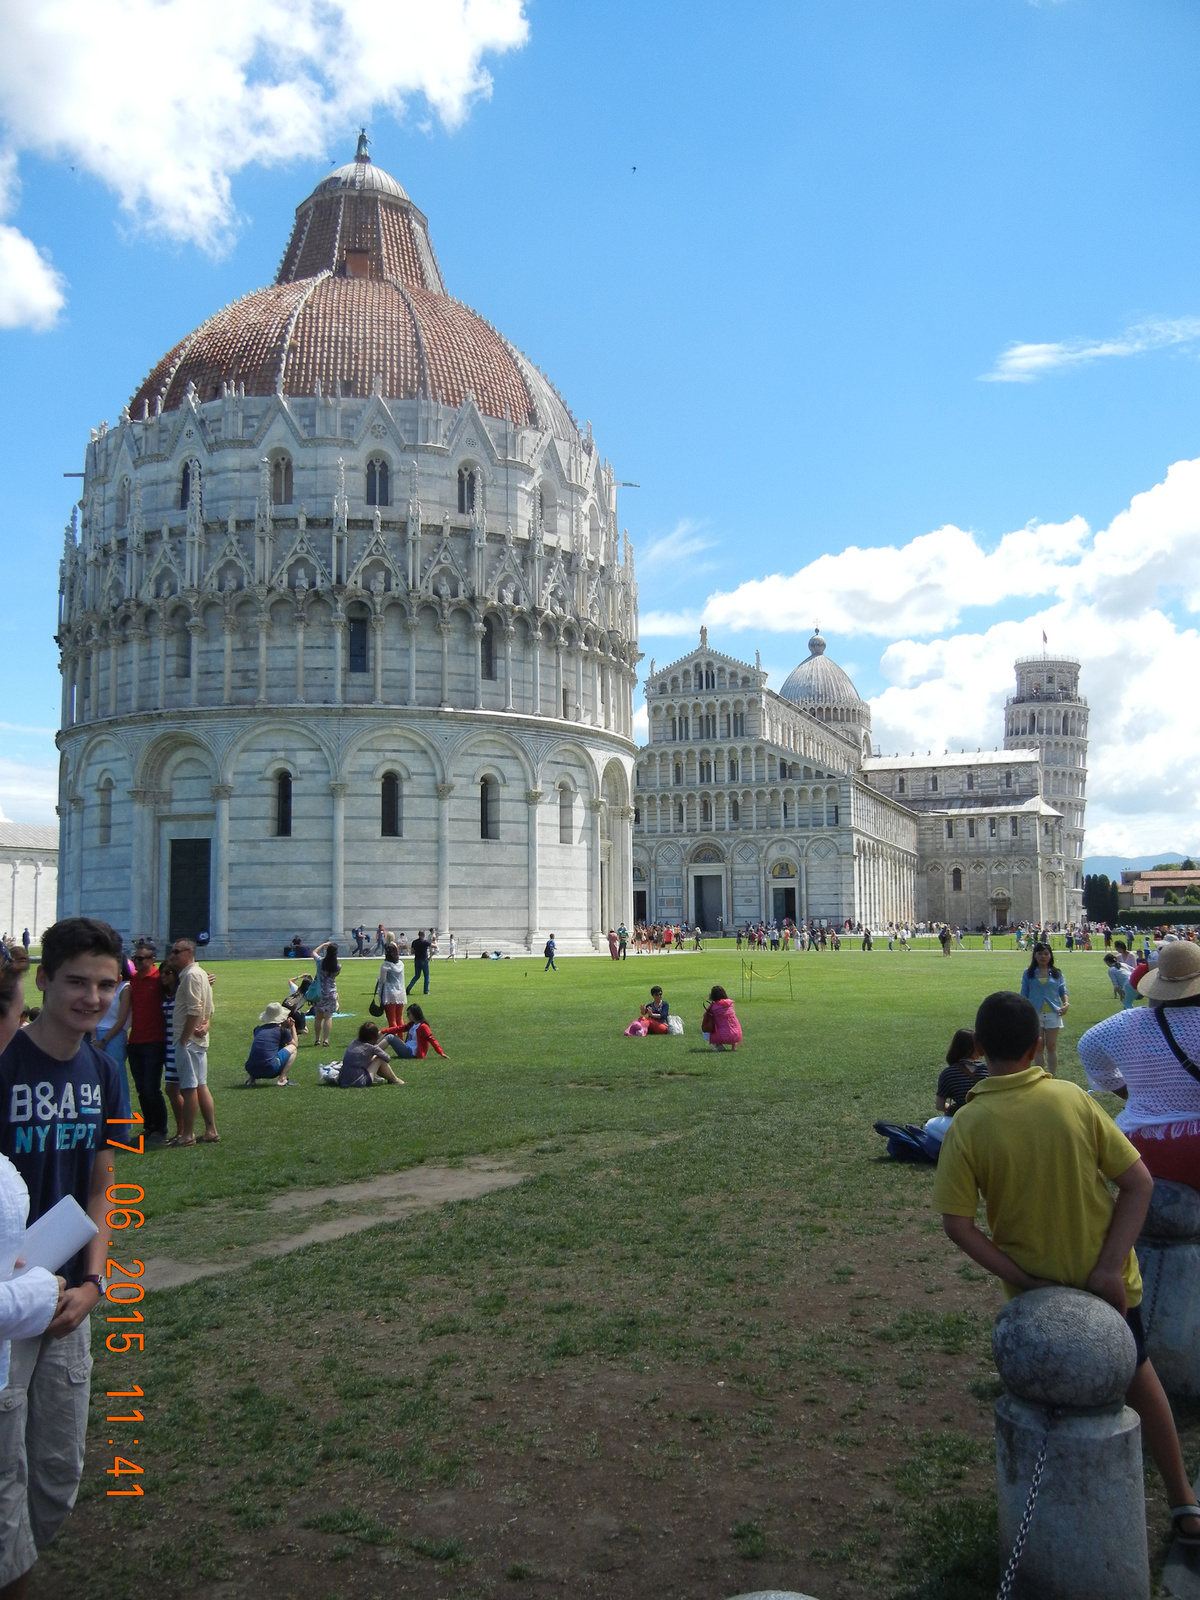 Pisa-Piazza dei Miracoli